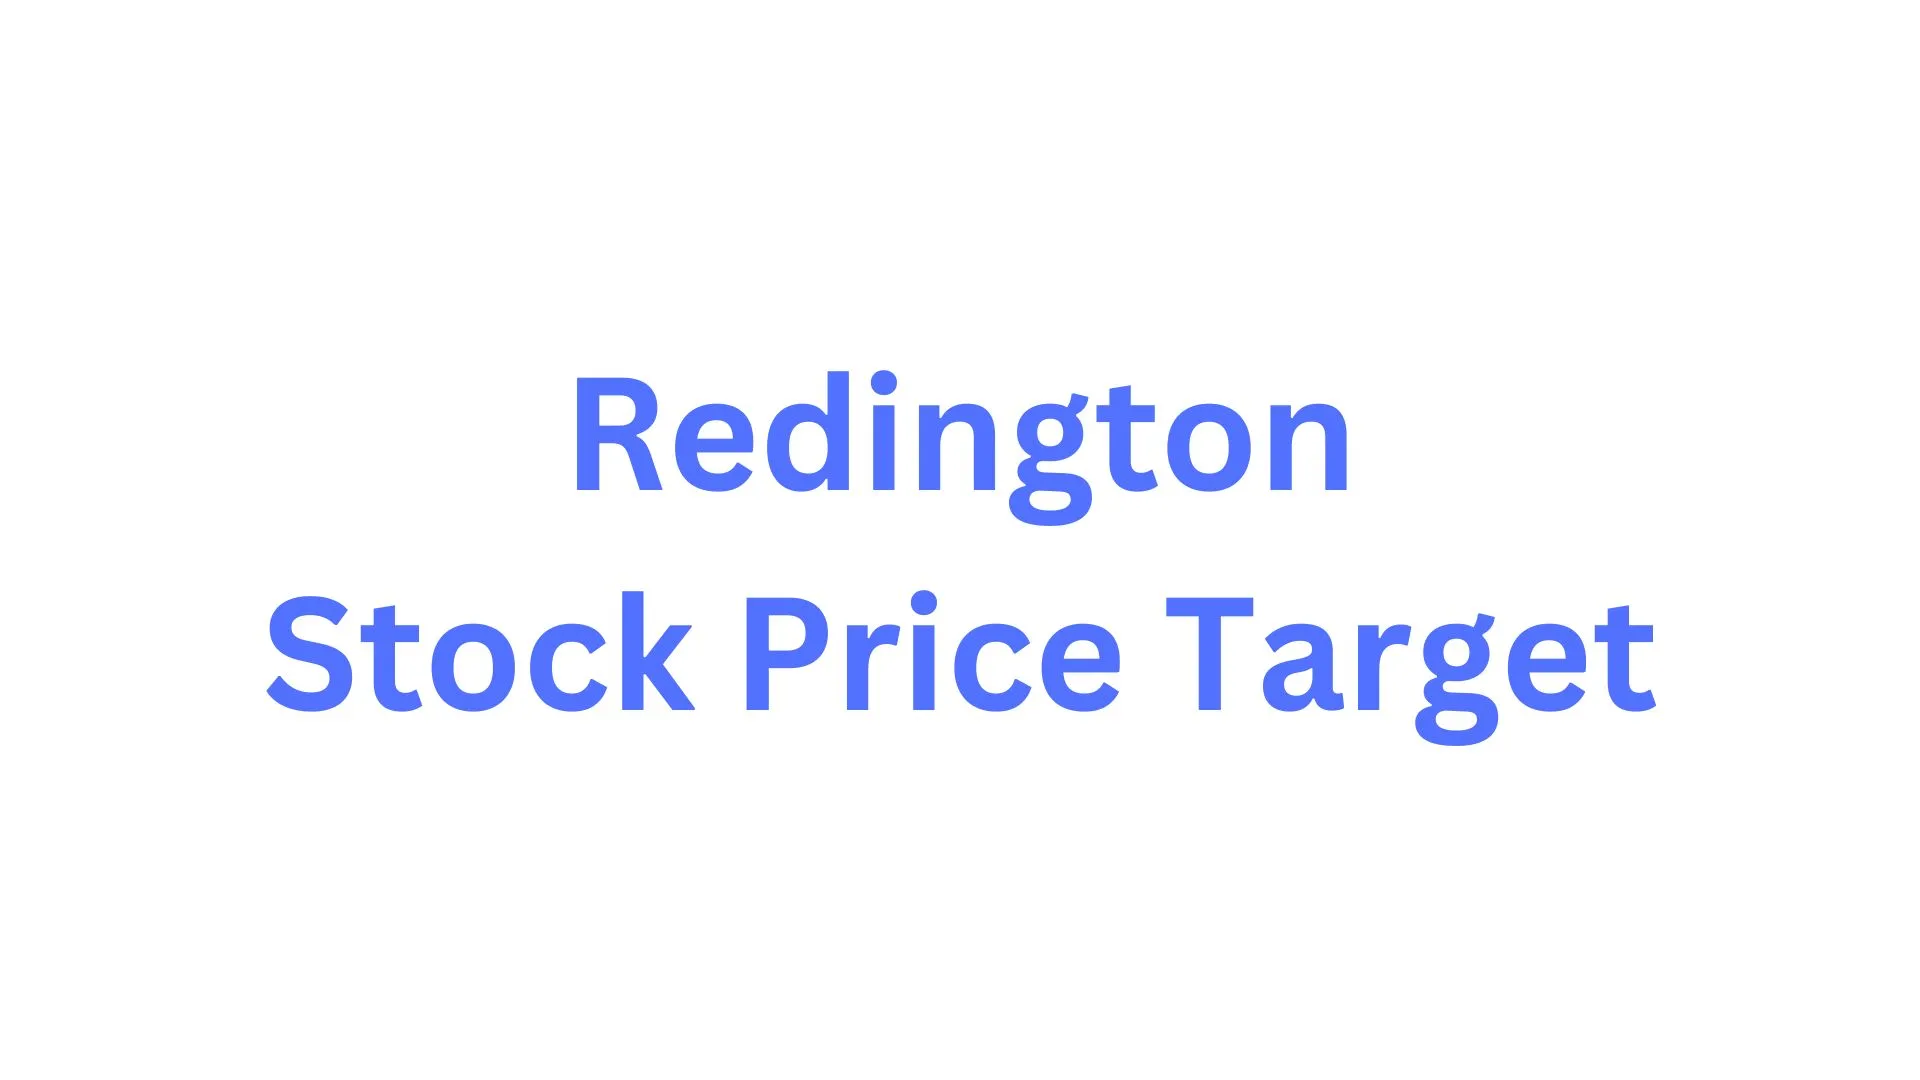 Redington Stock Price Target